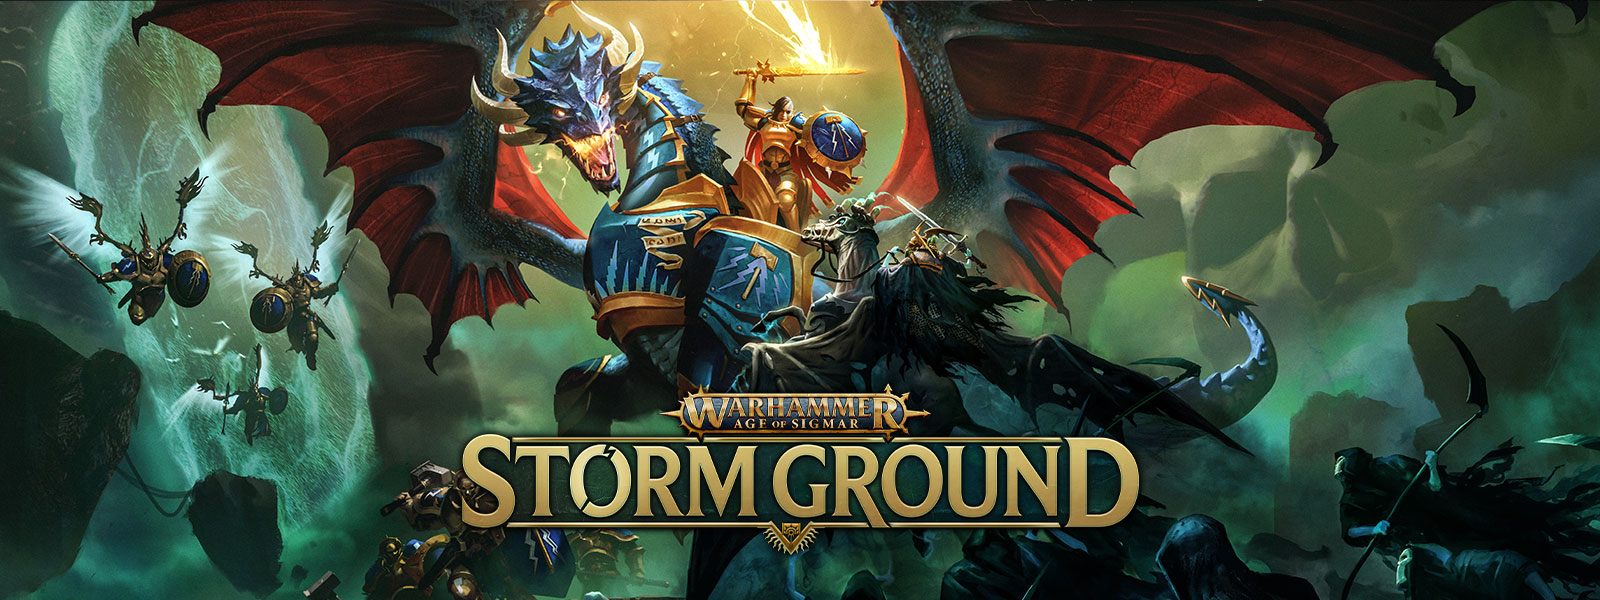 Warhammer Age of Sigmar: Storm Ground, haarniskoidulla lohikäärmeellä ratsastava soturi taistelee luurankoarmeijaa vastaan lentäen.